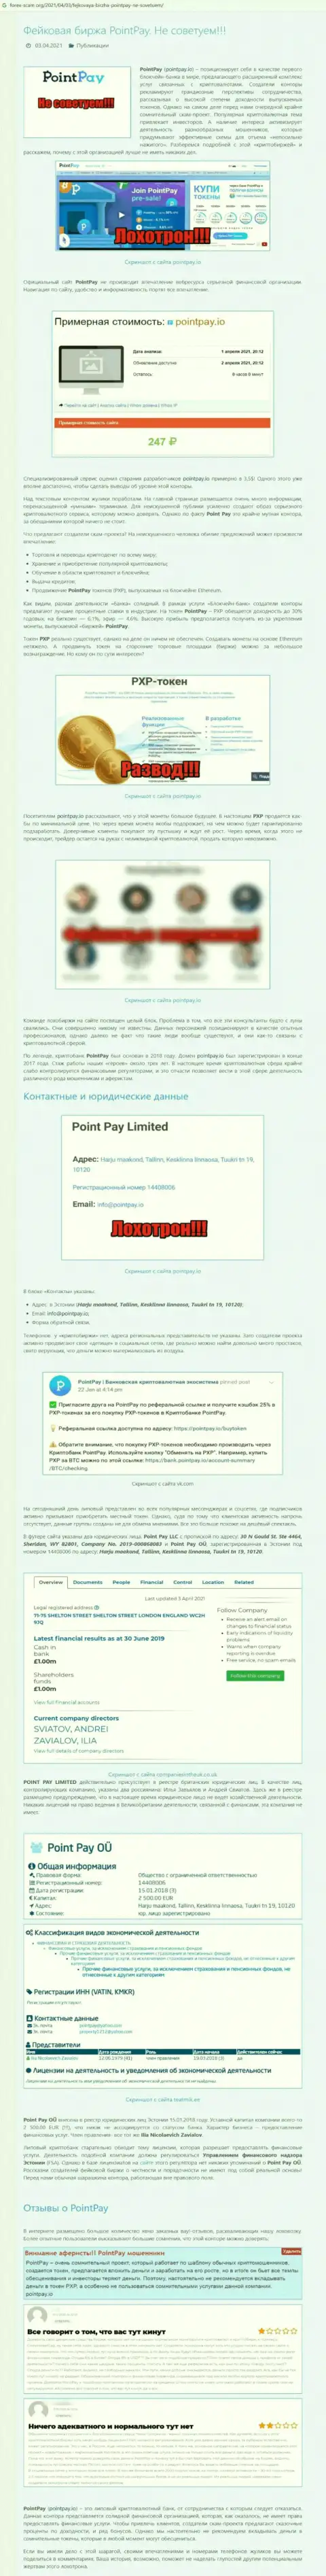 Point Pay LLC - это ЖУЛИКИ !!! Воруют депозиты клиентов (обзор)